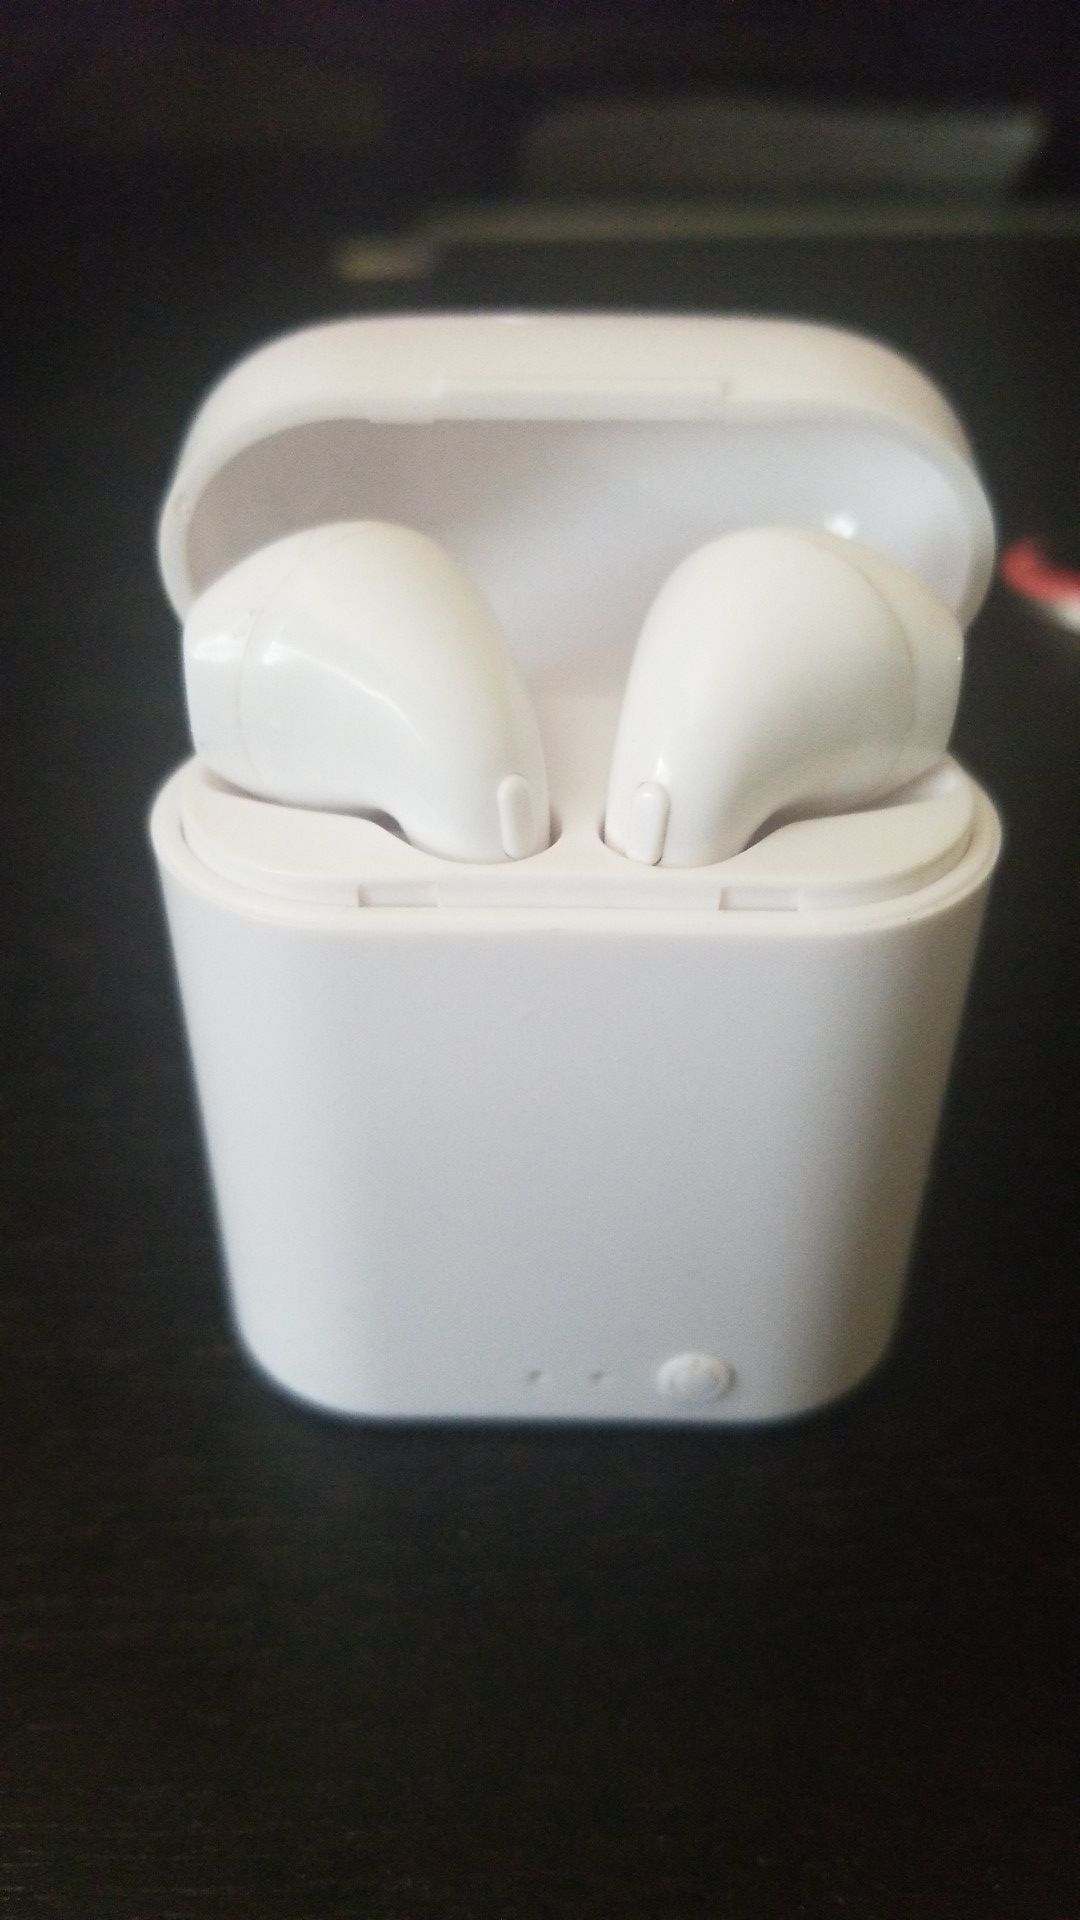 I 7 wireless earbuds